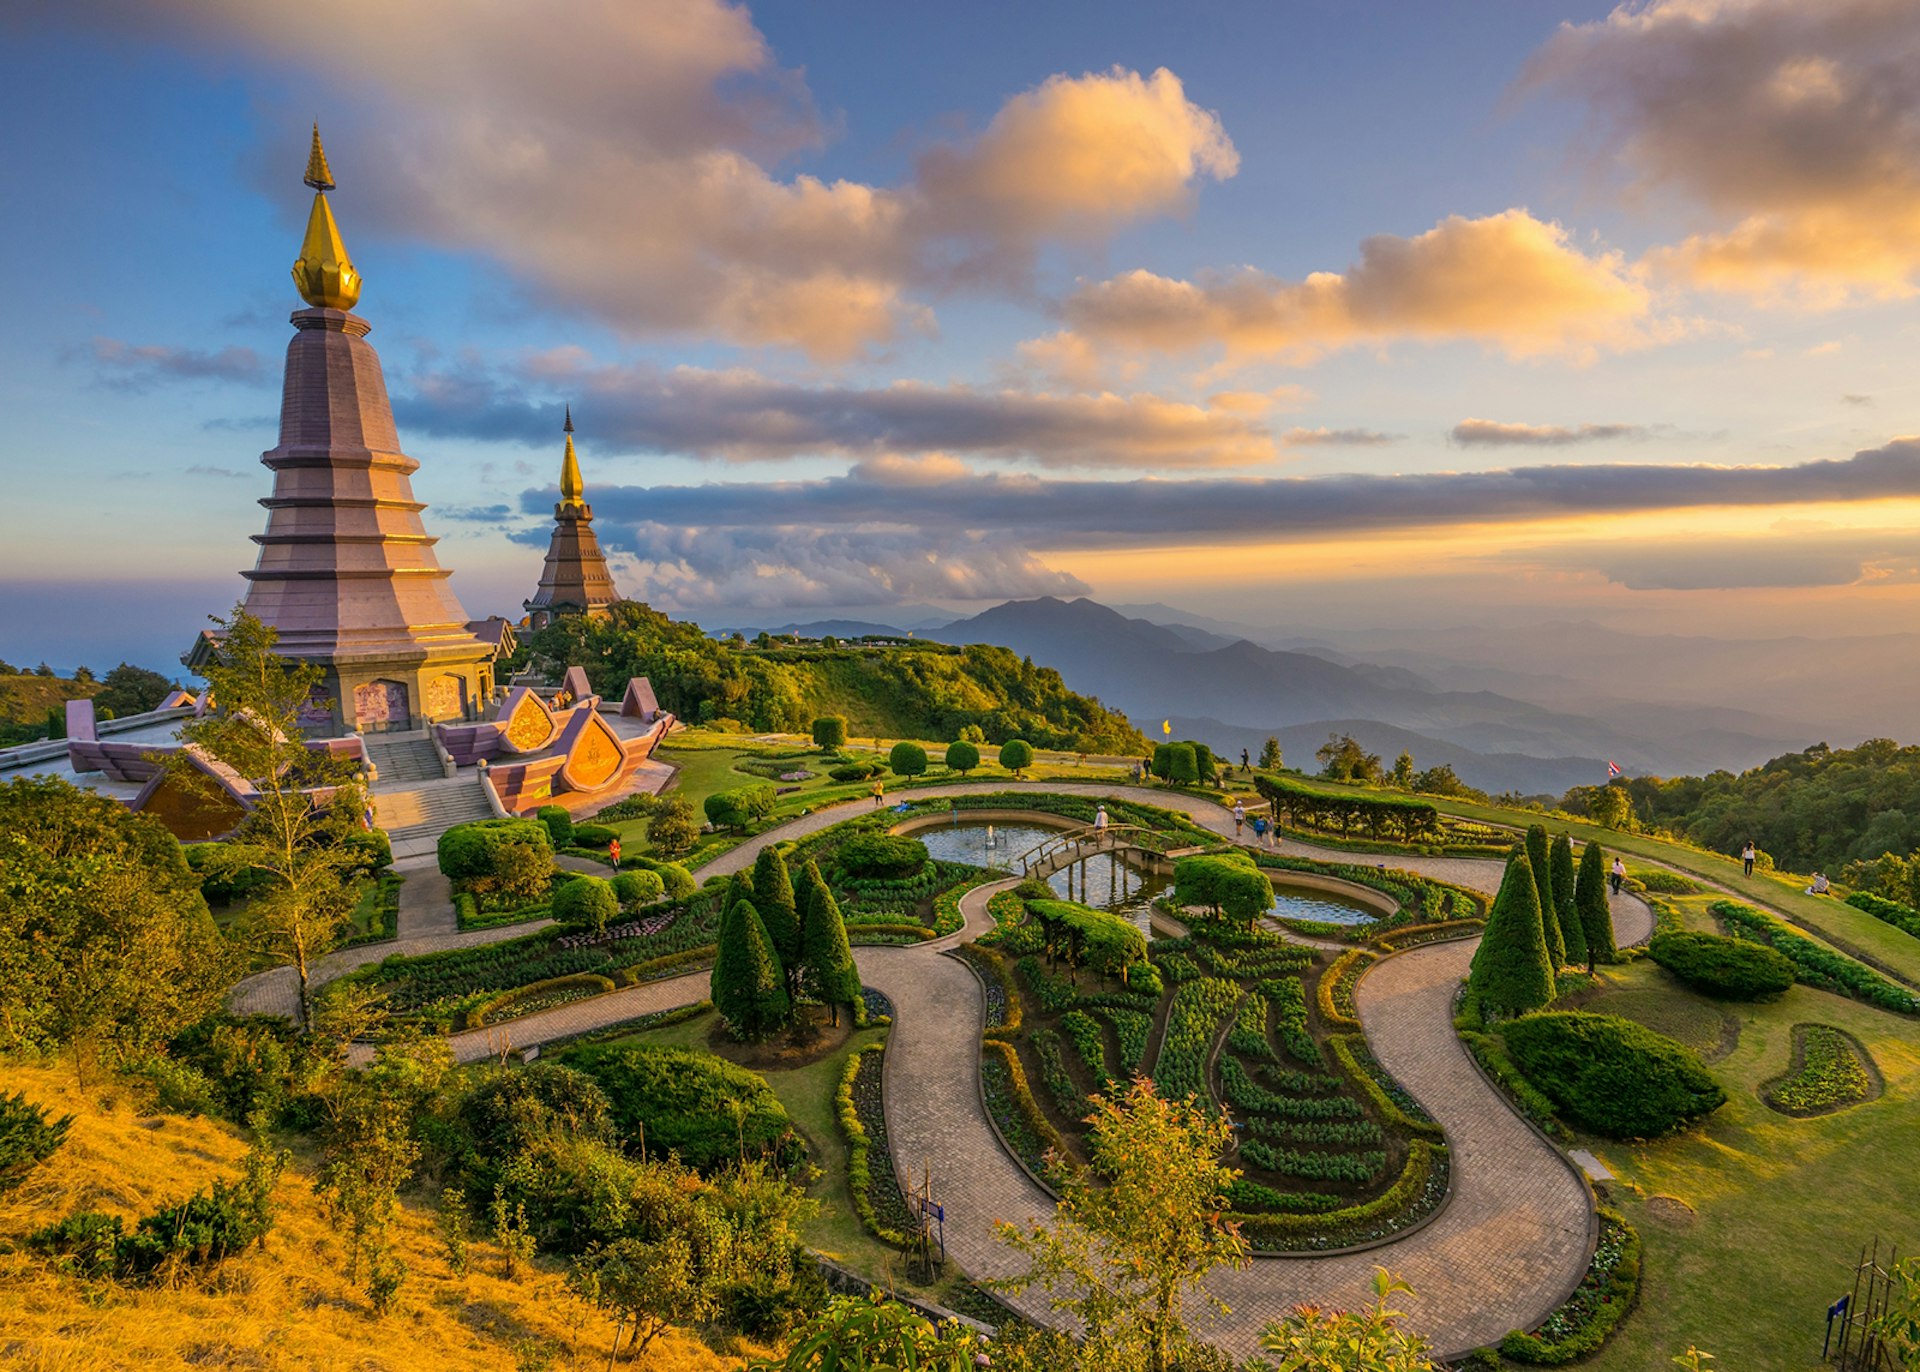 Noppamethanedol and Noppapol Phumsiri pagodas at Doi Inthanon, Chiang Mai, Thailand.